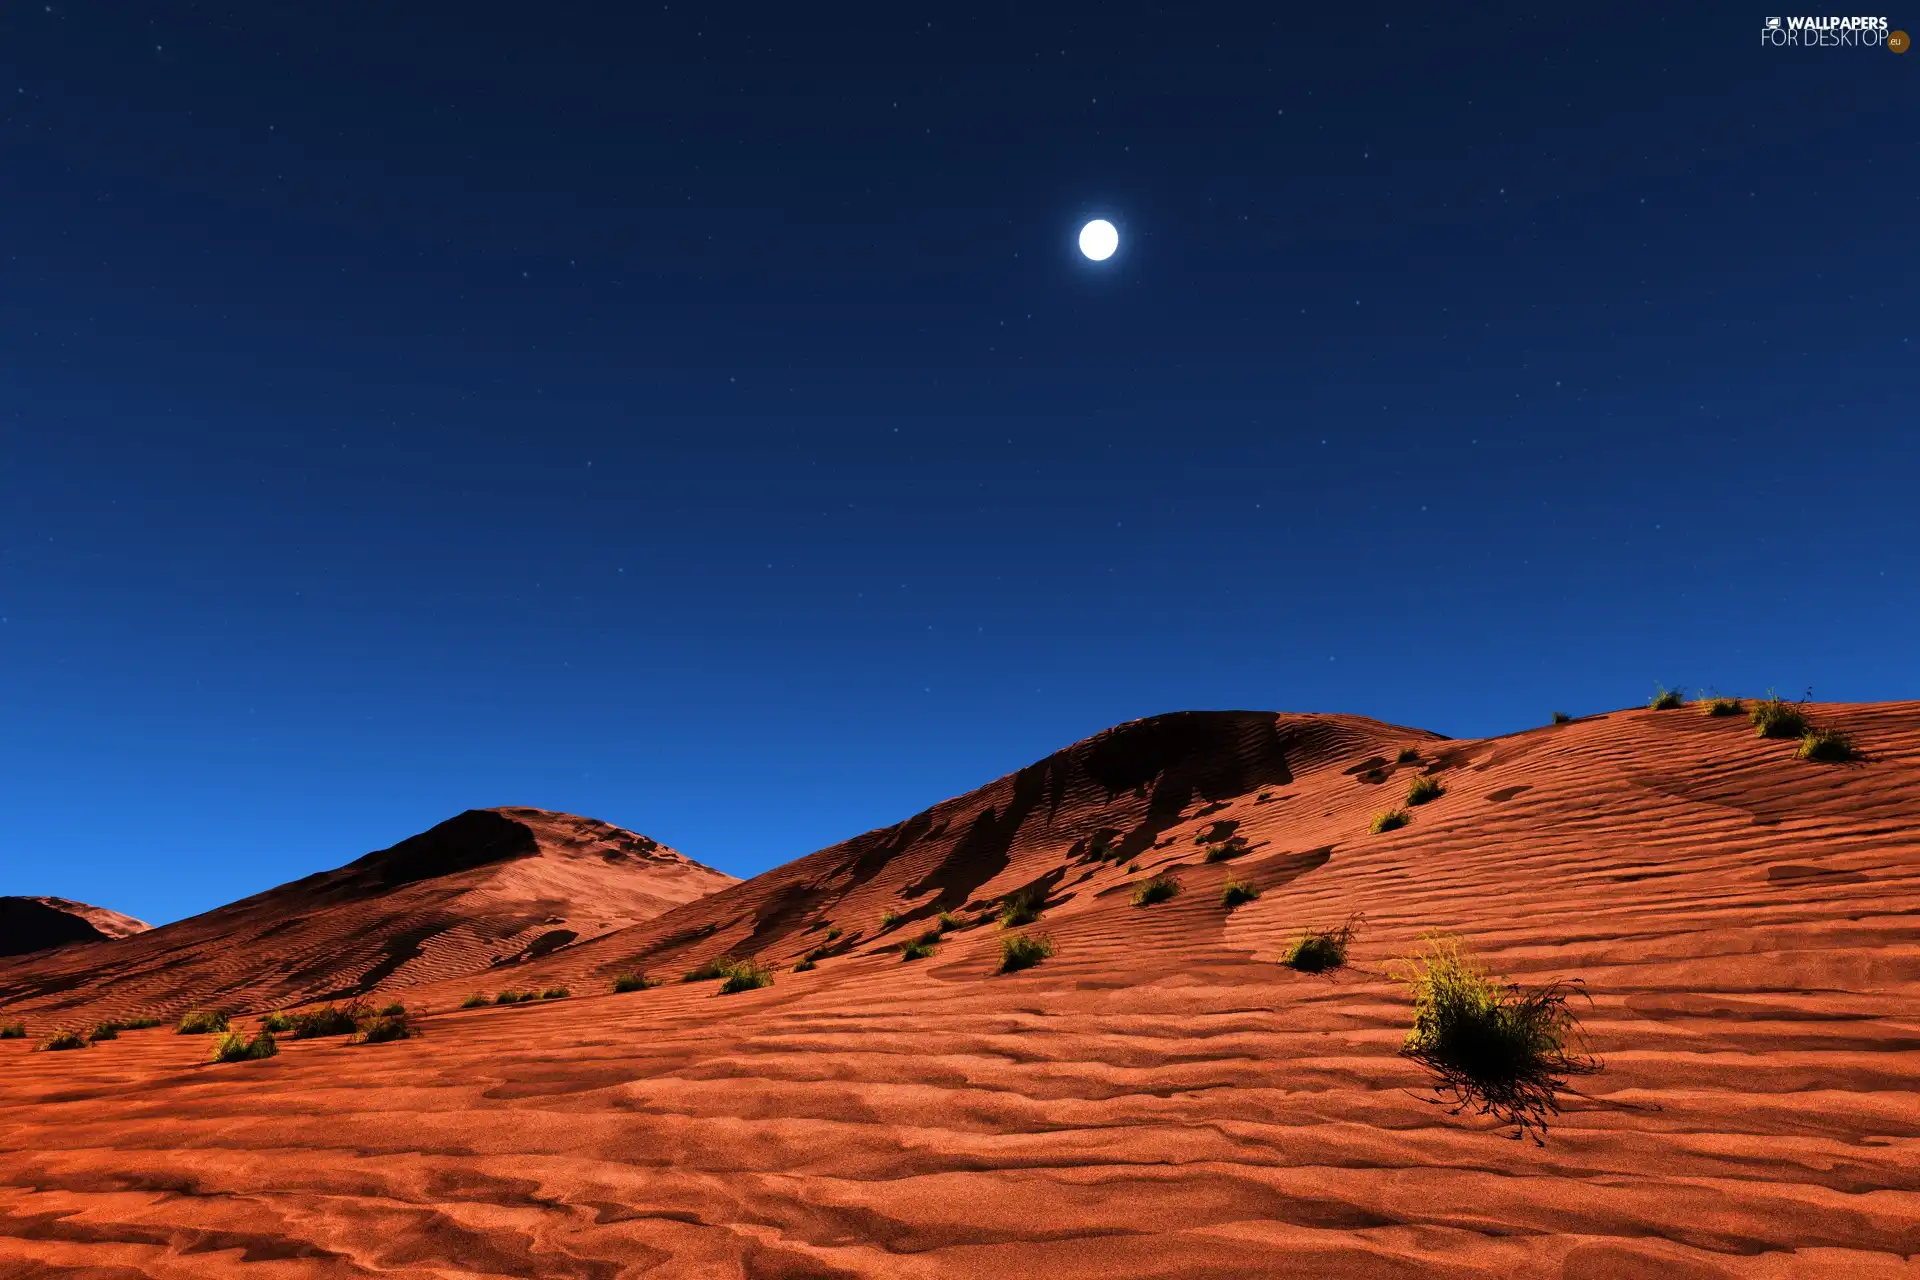 Desert, Sand, moon, Dunes